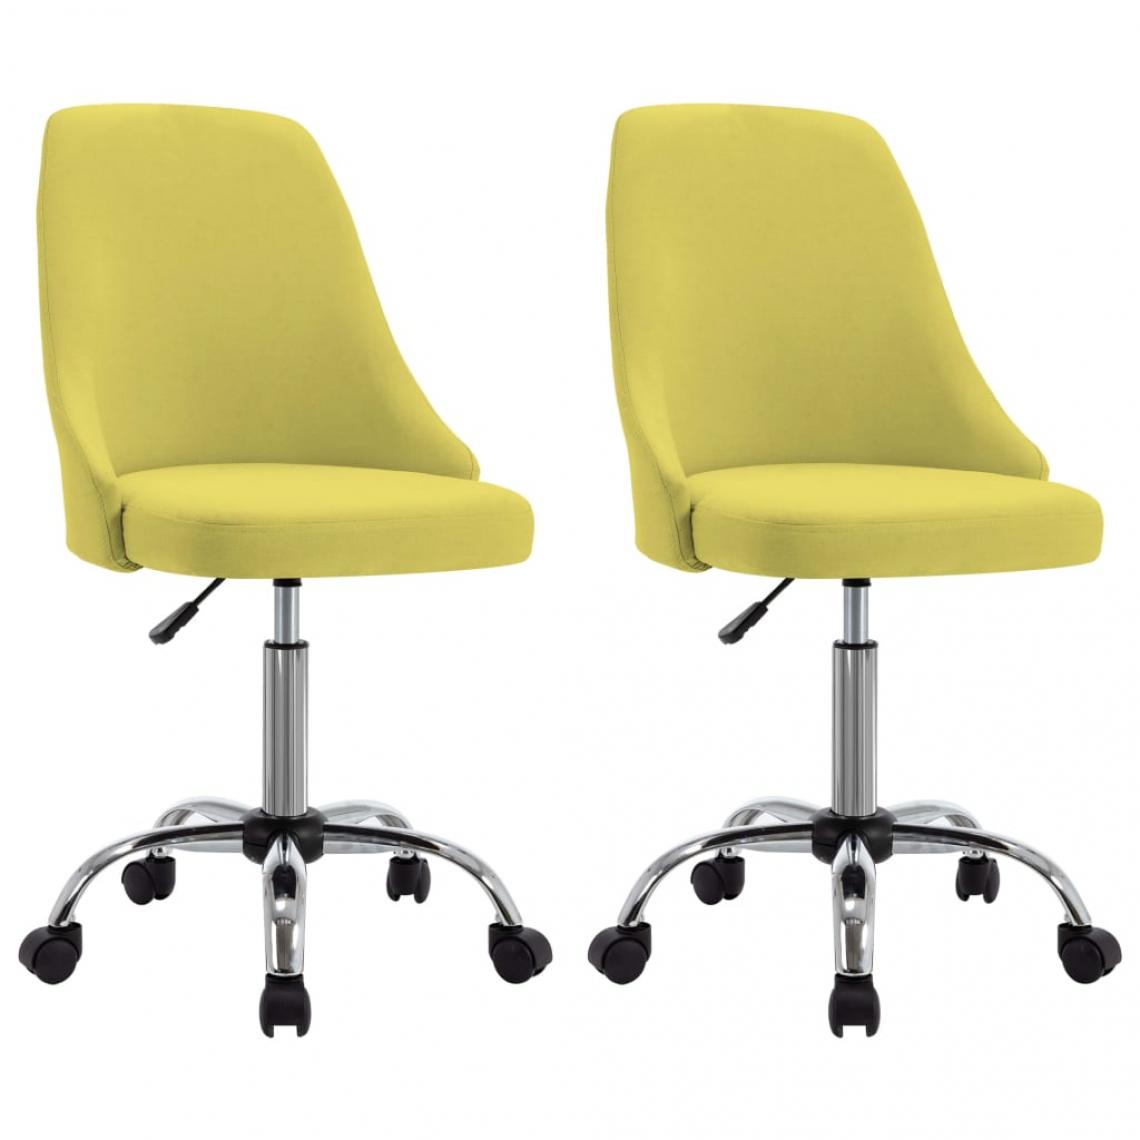 Decoshop26 - Lot de 2 chaises de salle à manger cuisine design moderne tissu jaune CDS020654 - Chaises